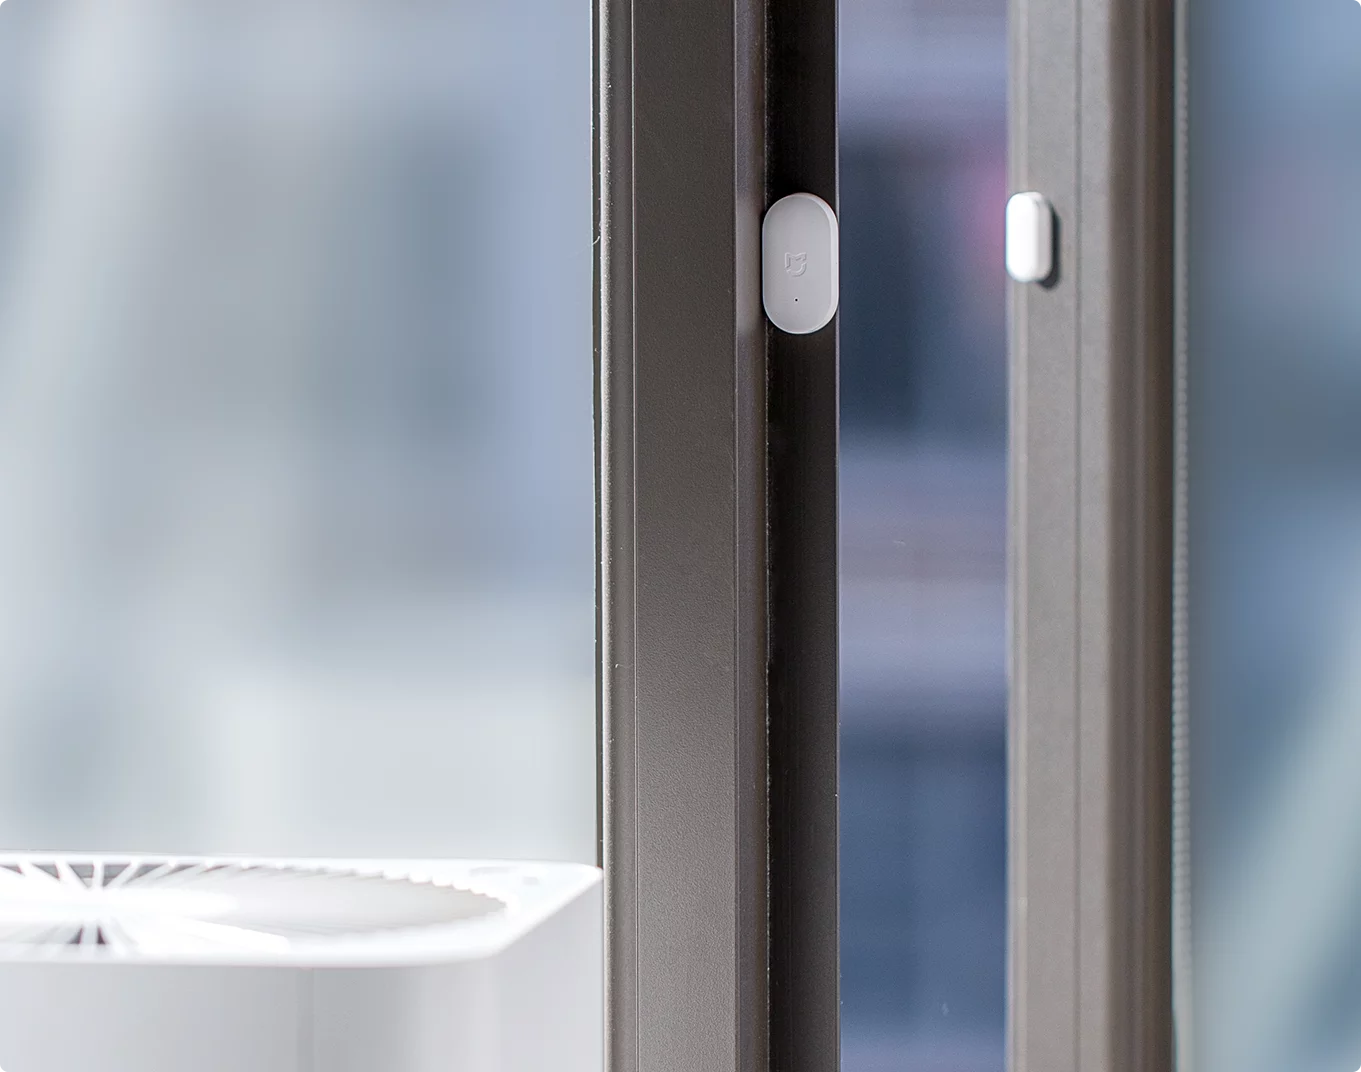 Mi Window and Door Sensor - JoCell جوسيل